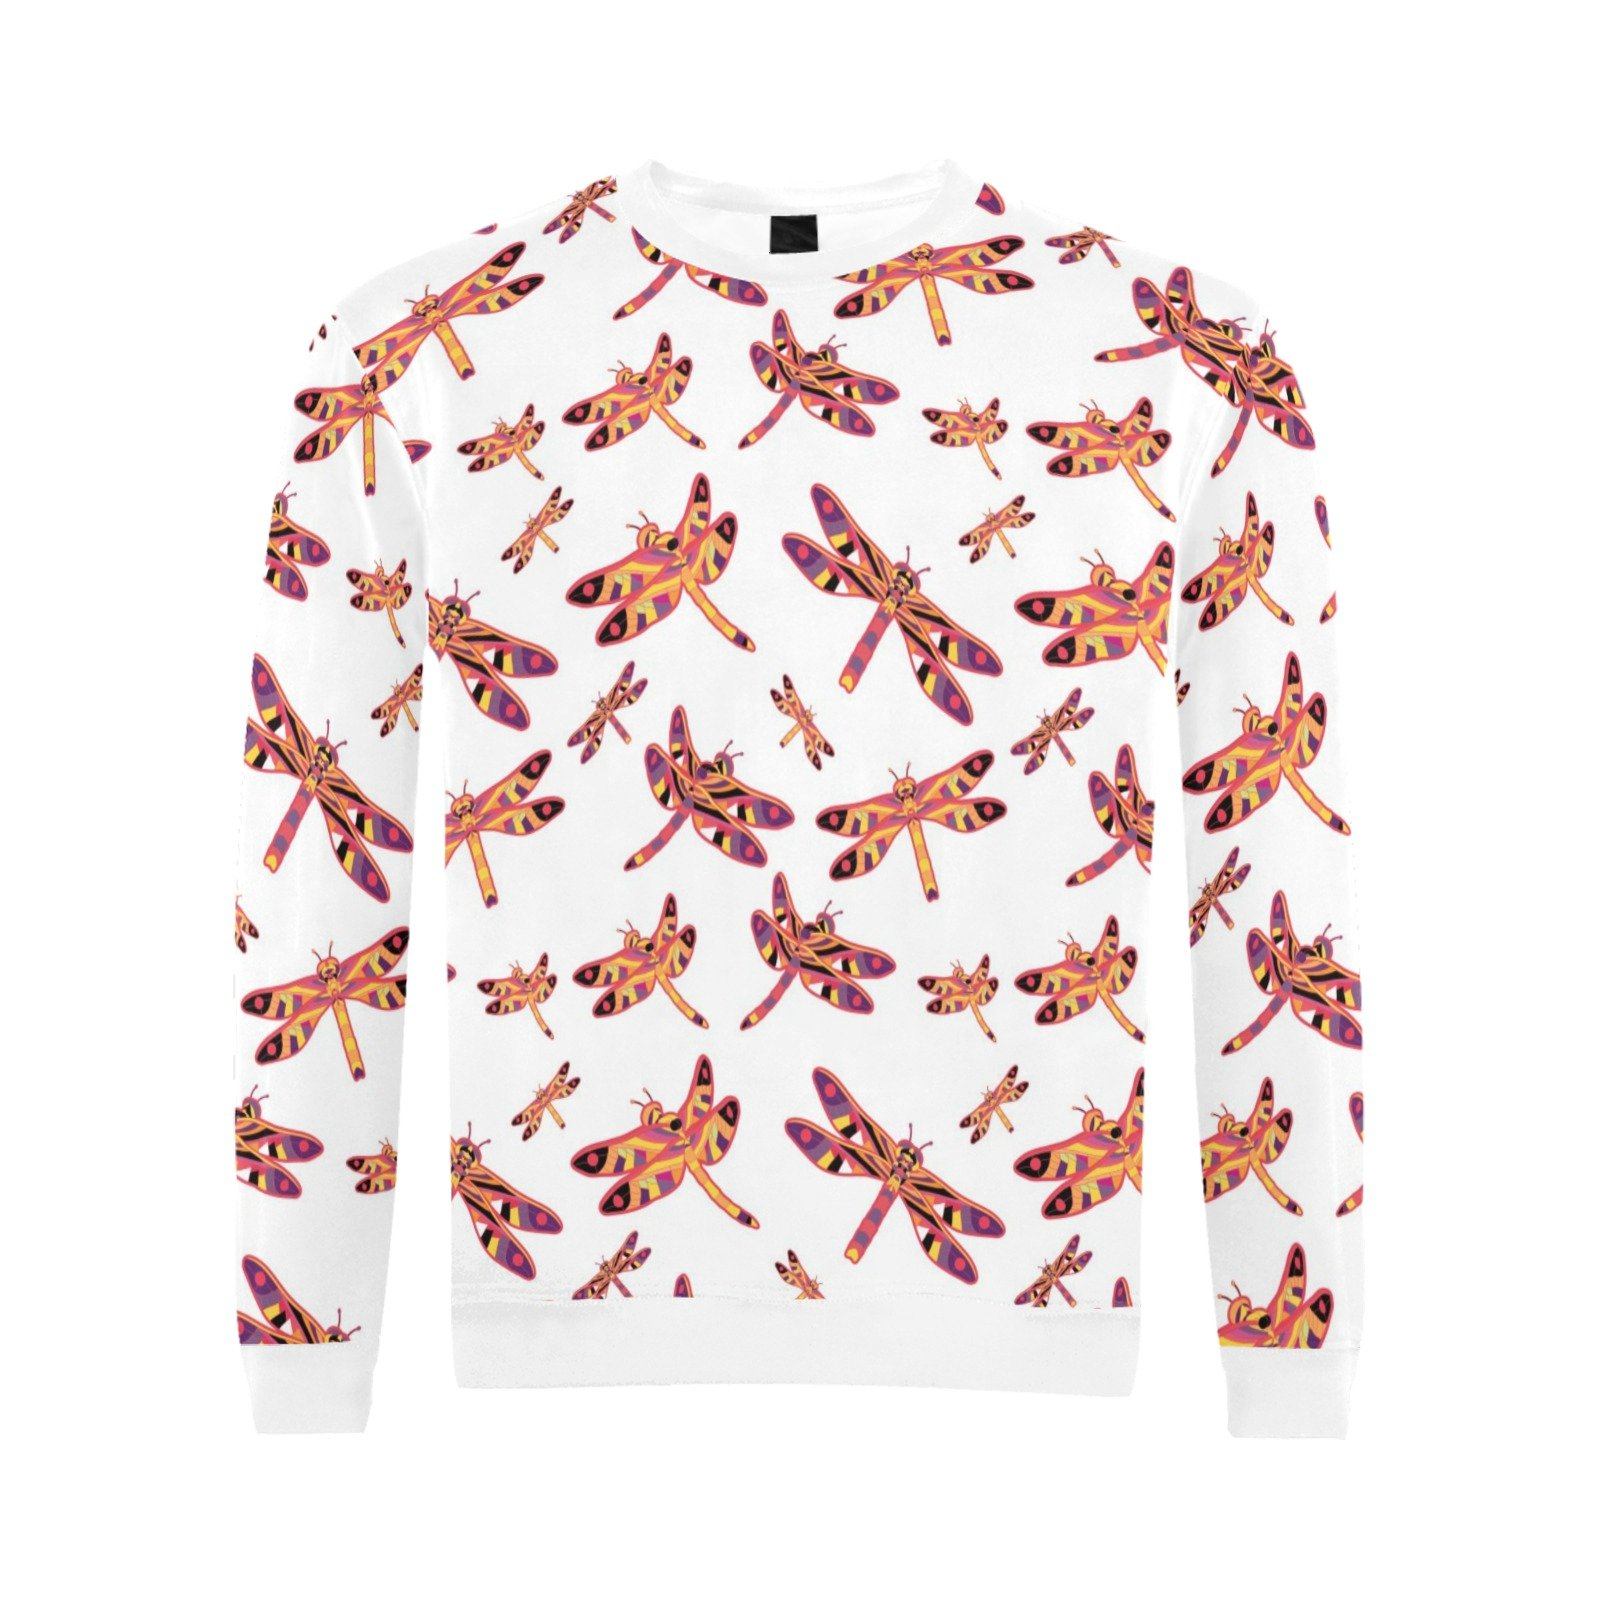 Gathering White All Over Print Crewneck Sweatshirt for Men (Model H18) shirt e-joyer 